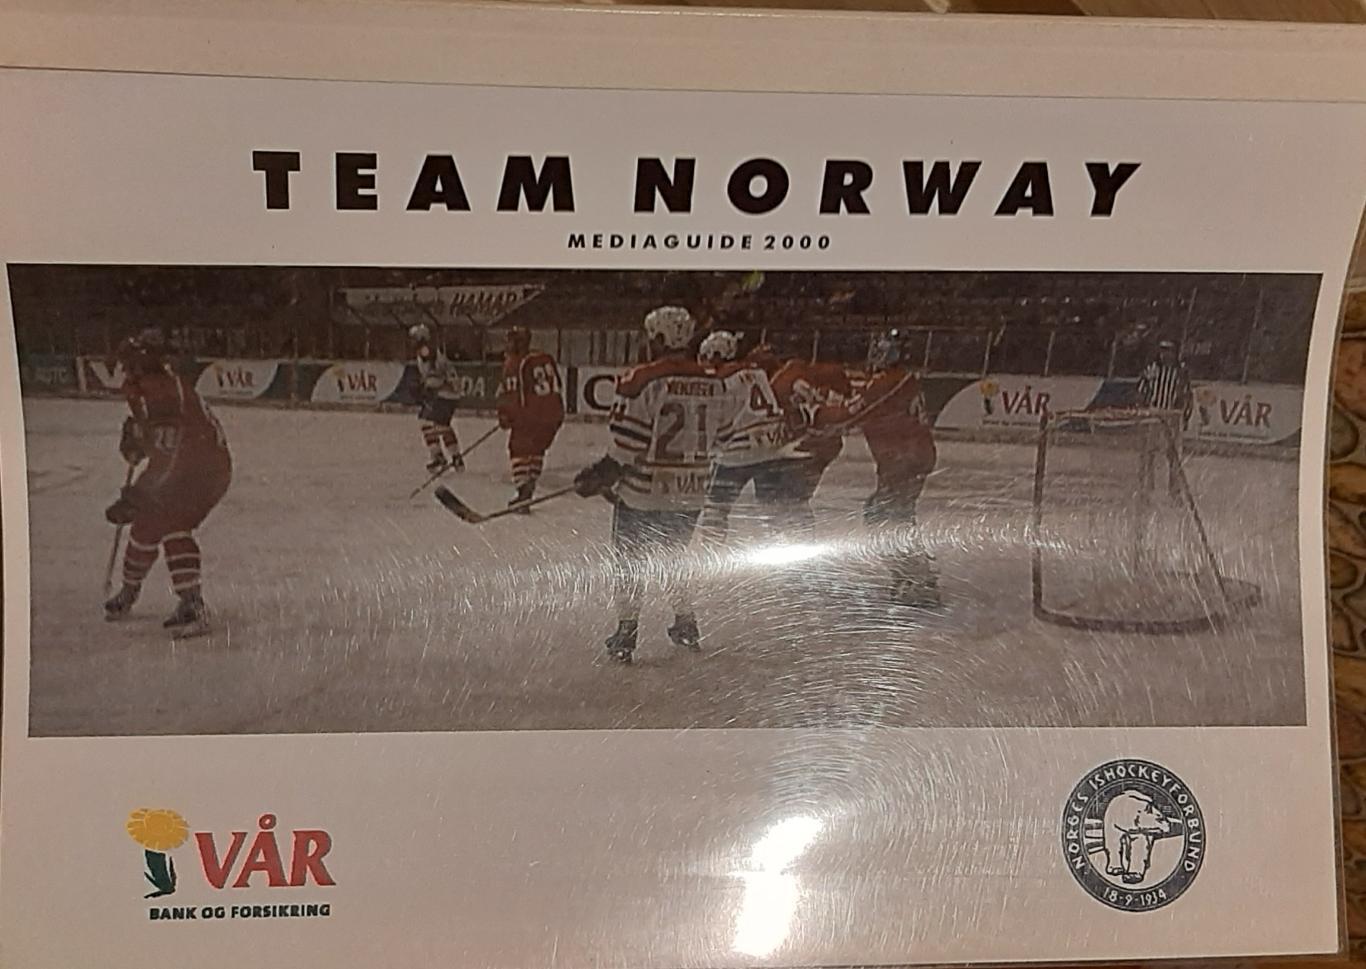 Чемпионат мира-2000. Сборная Норвегии. Представительский буклет